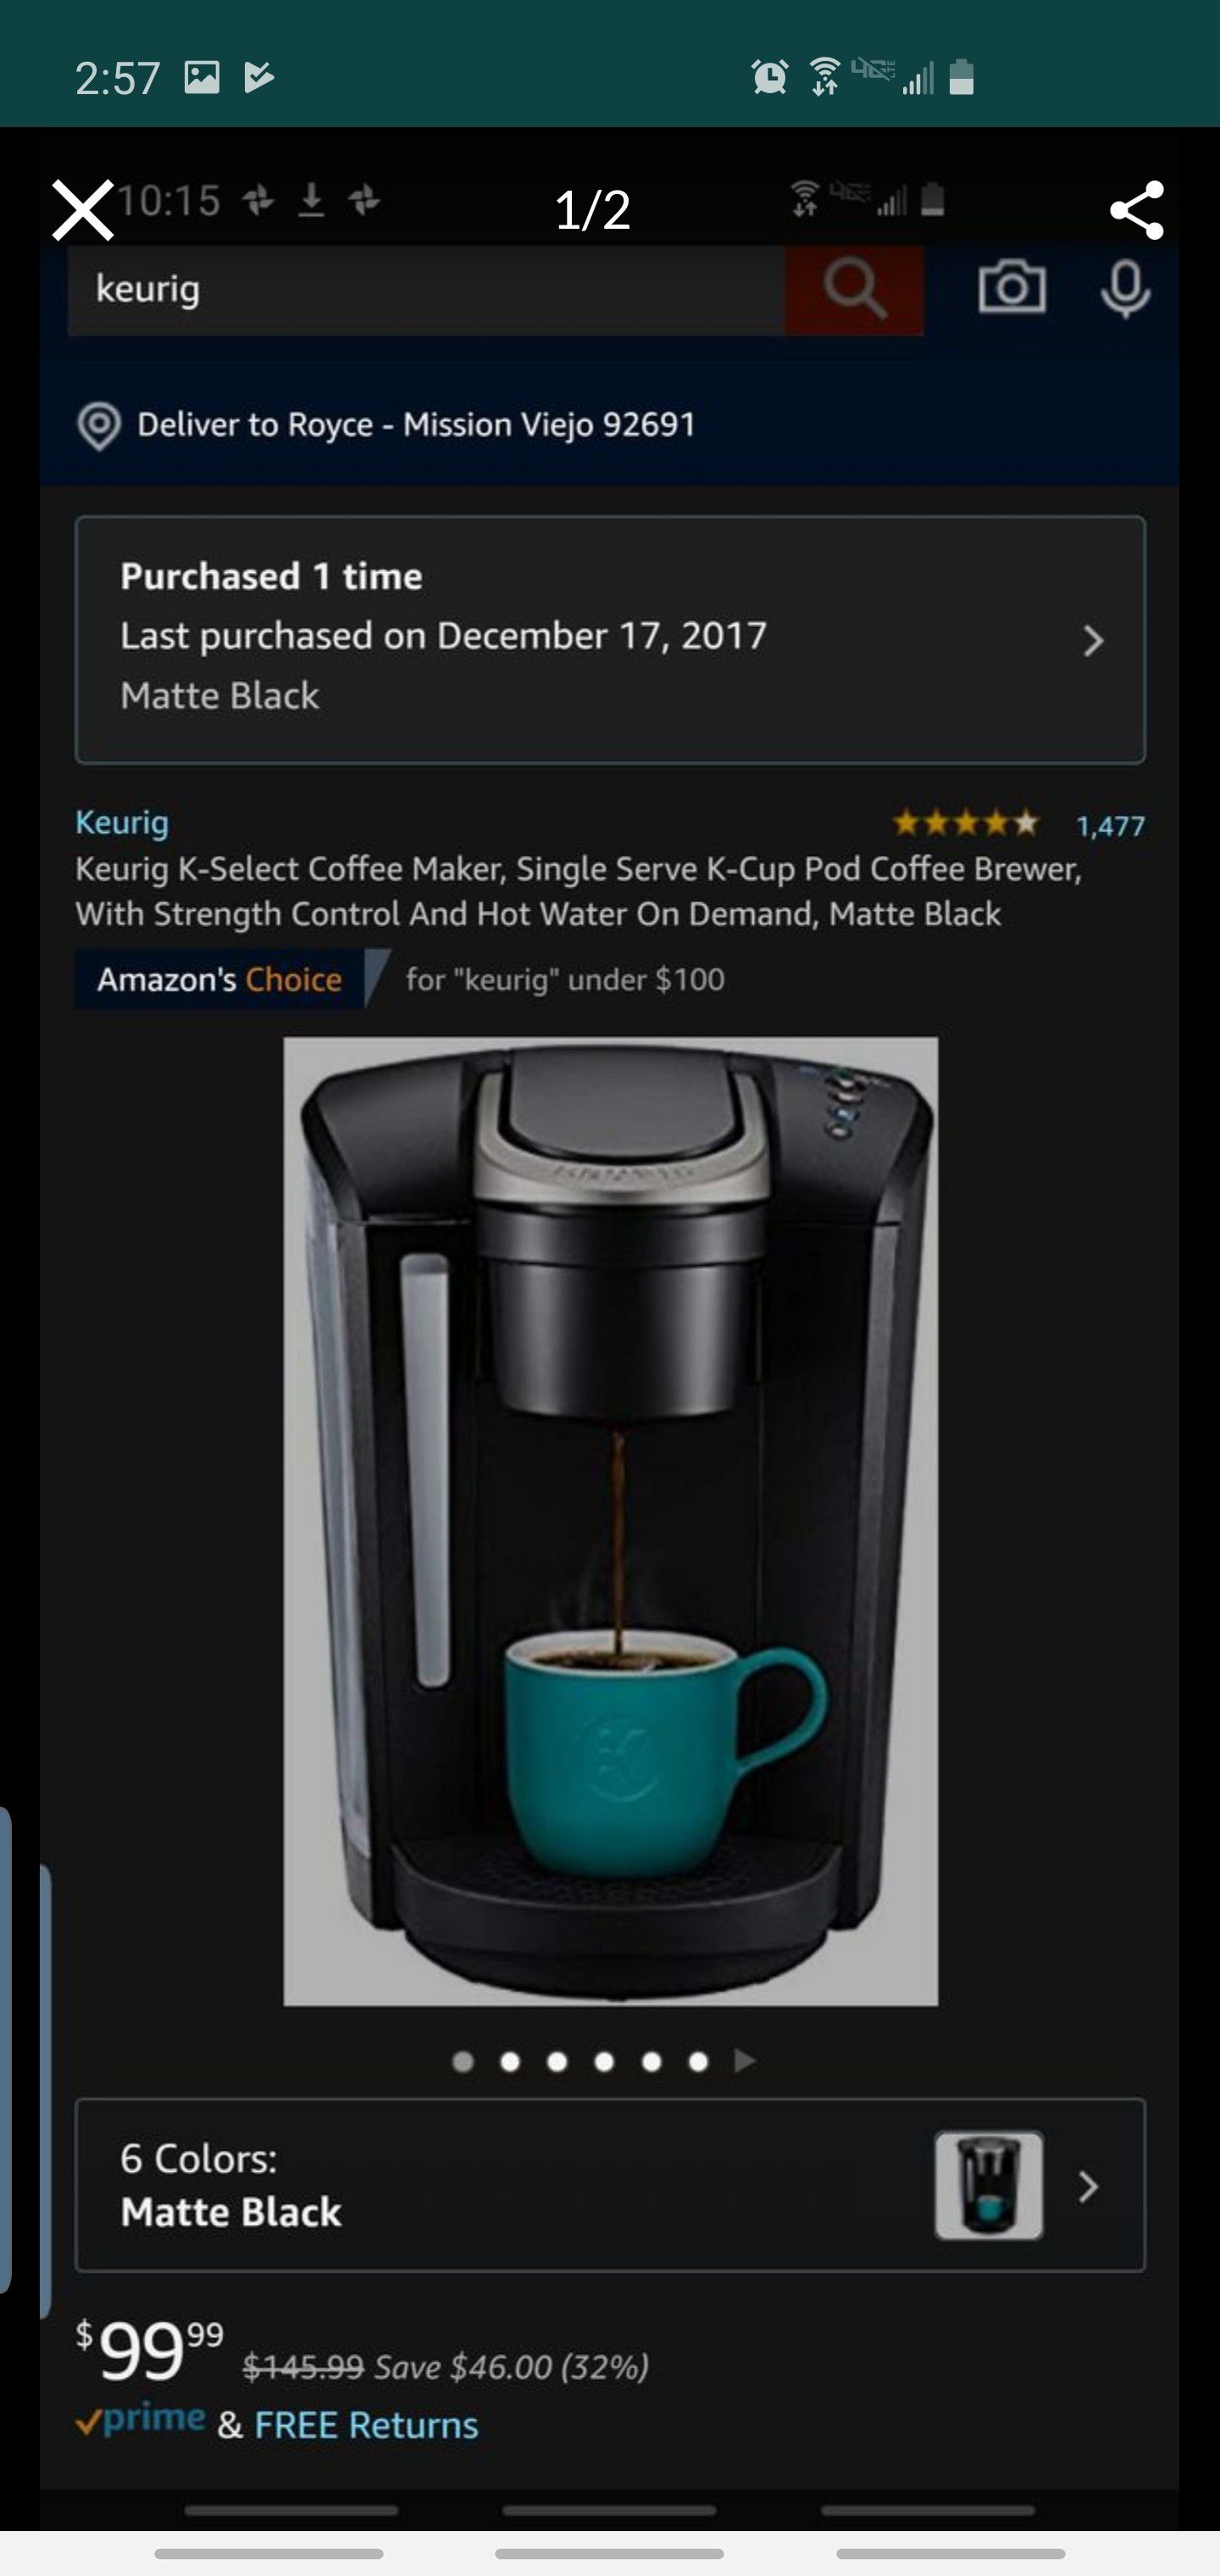 Used K select Keurig coffee maker (great deal)